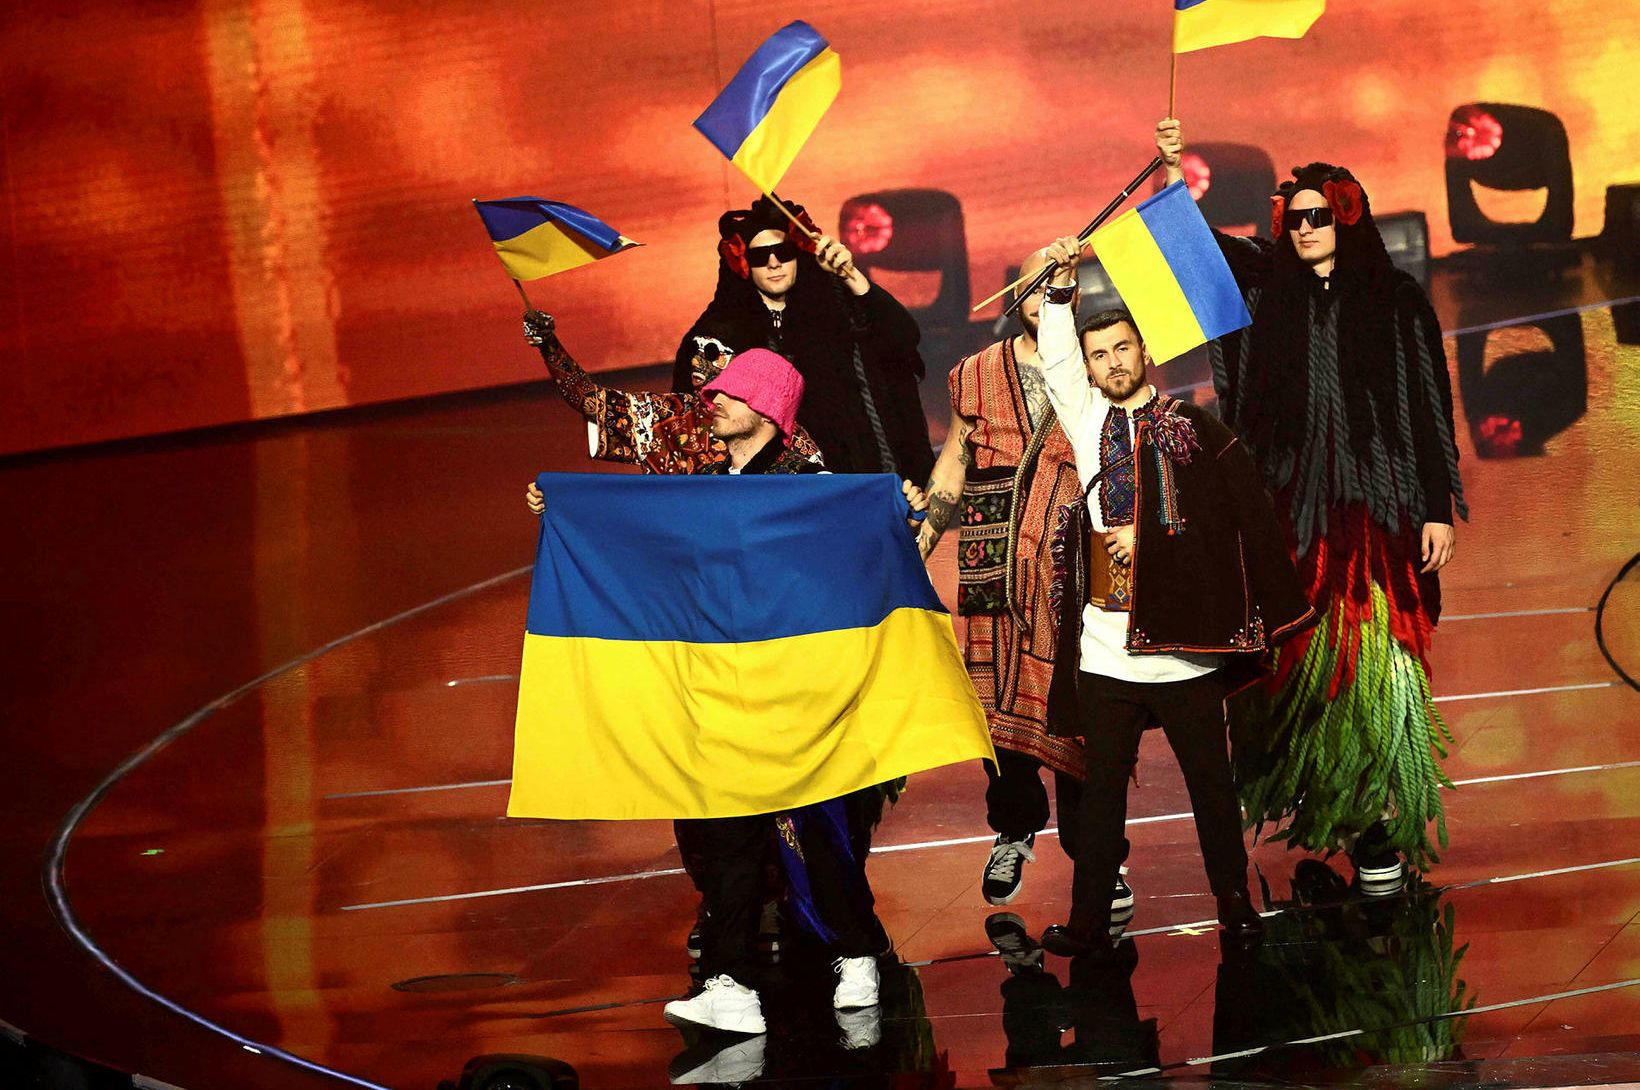 Úkraína sigurvegarar Eurovision 2022